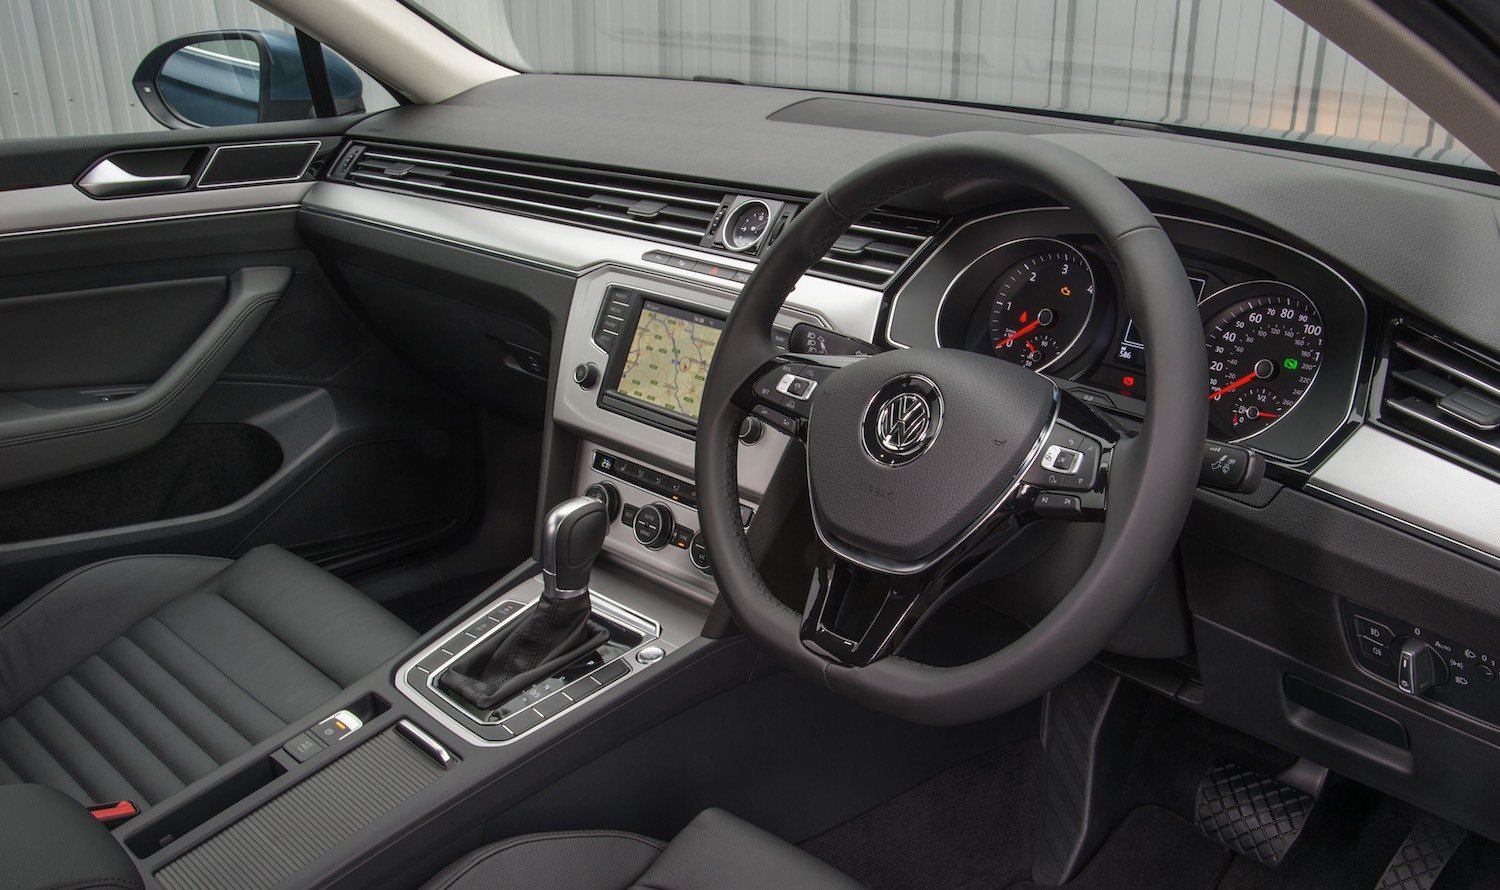 Tom Scanlan reviews the 2017 Volkswagen Passat 7